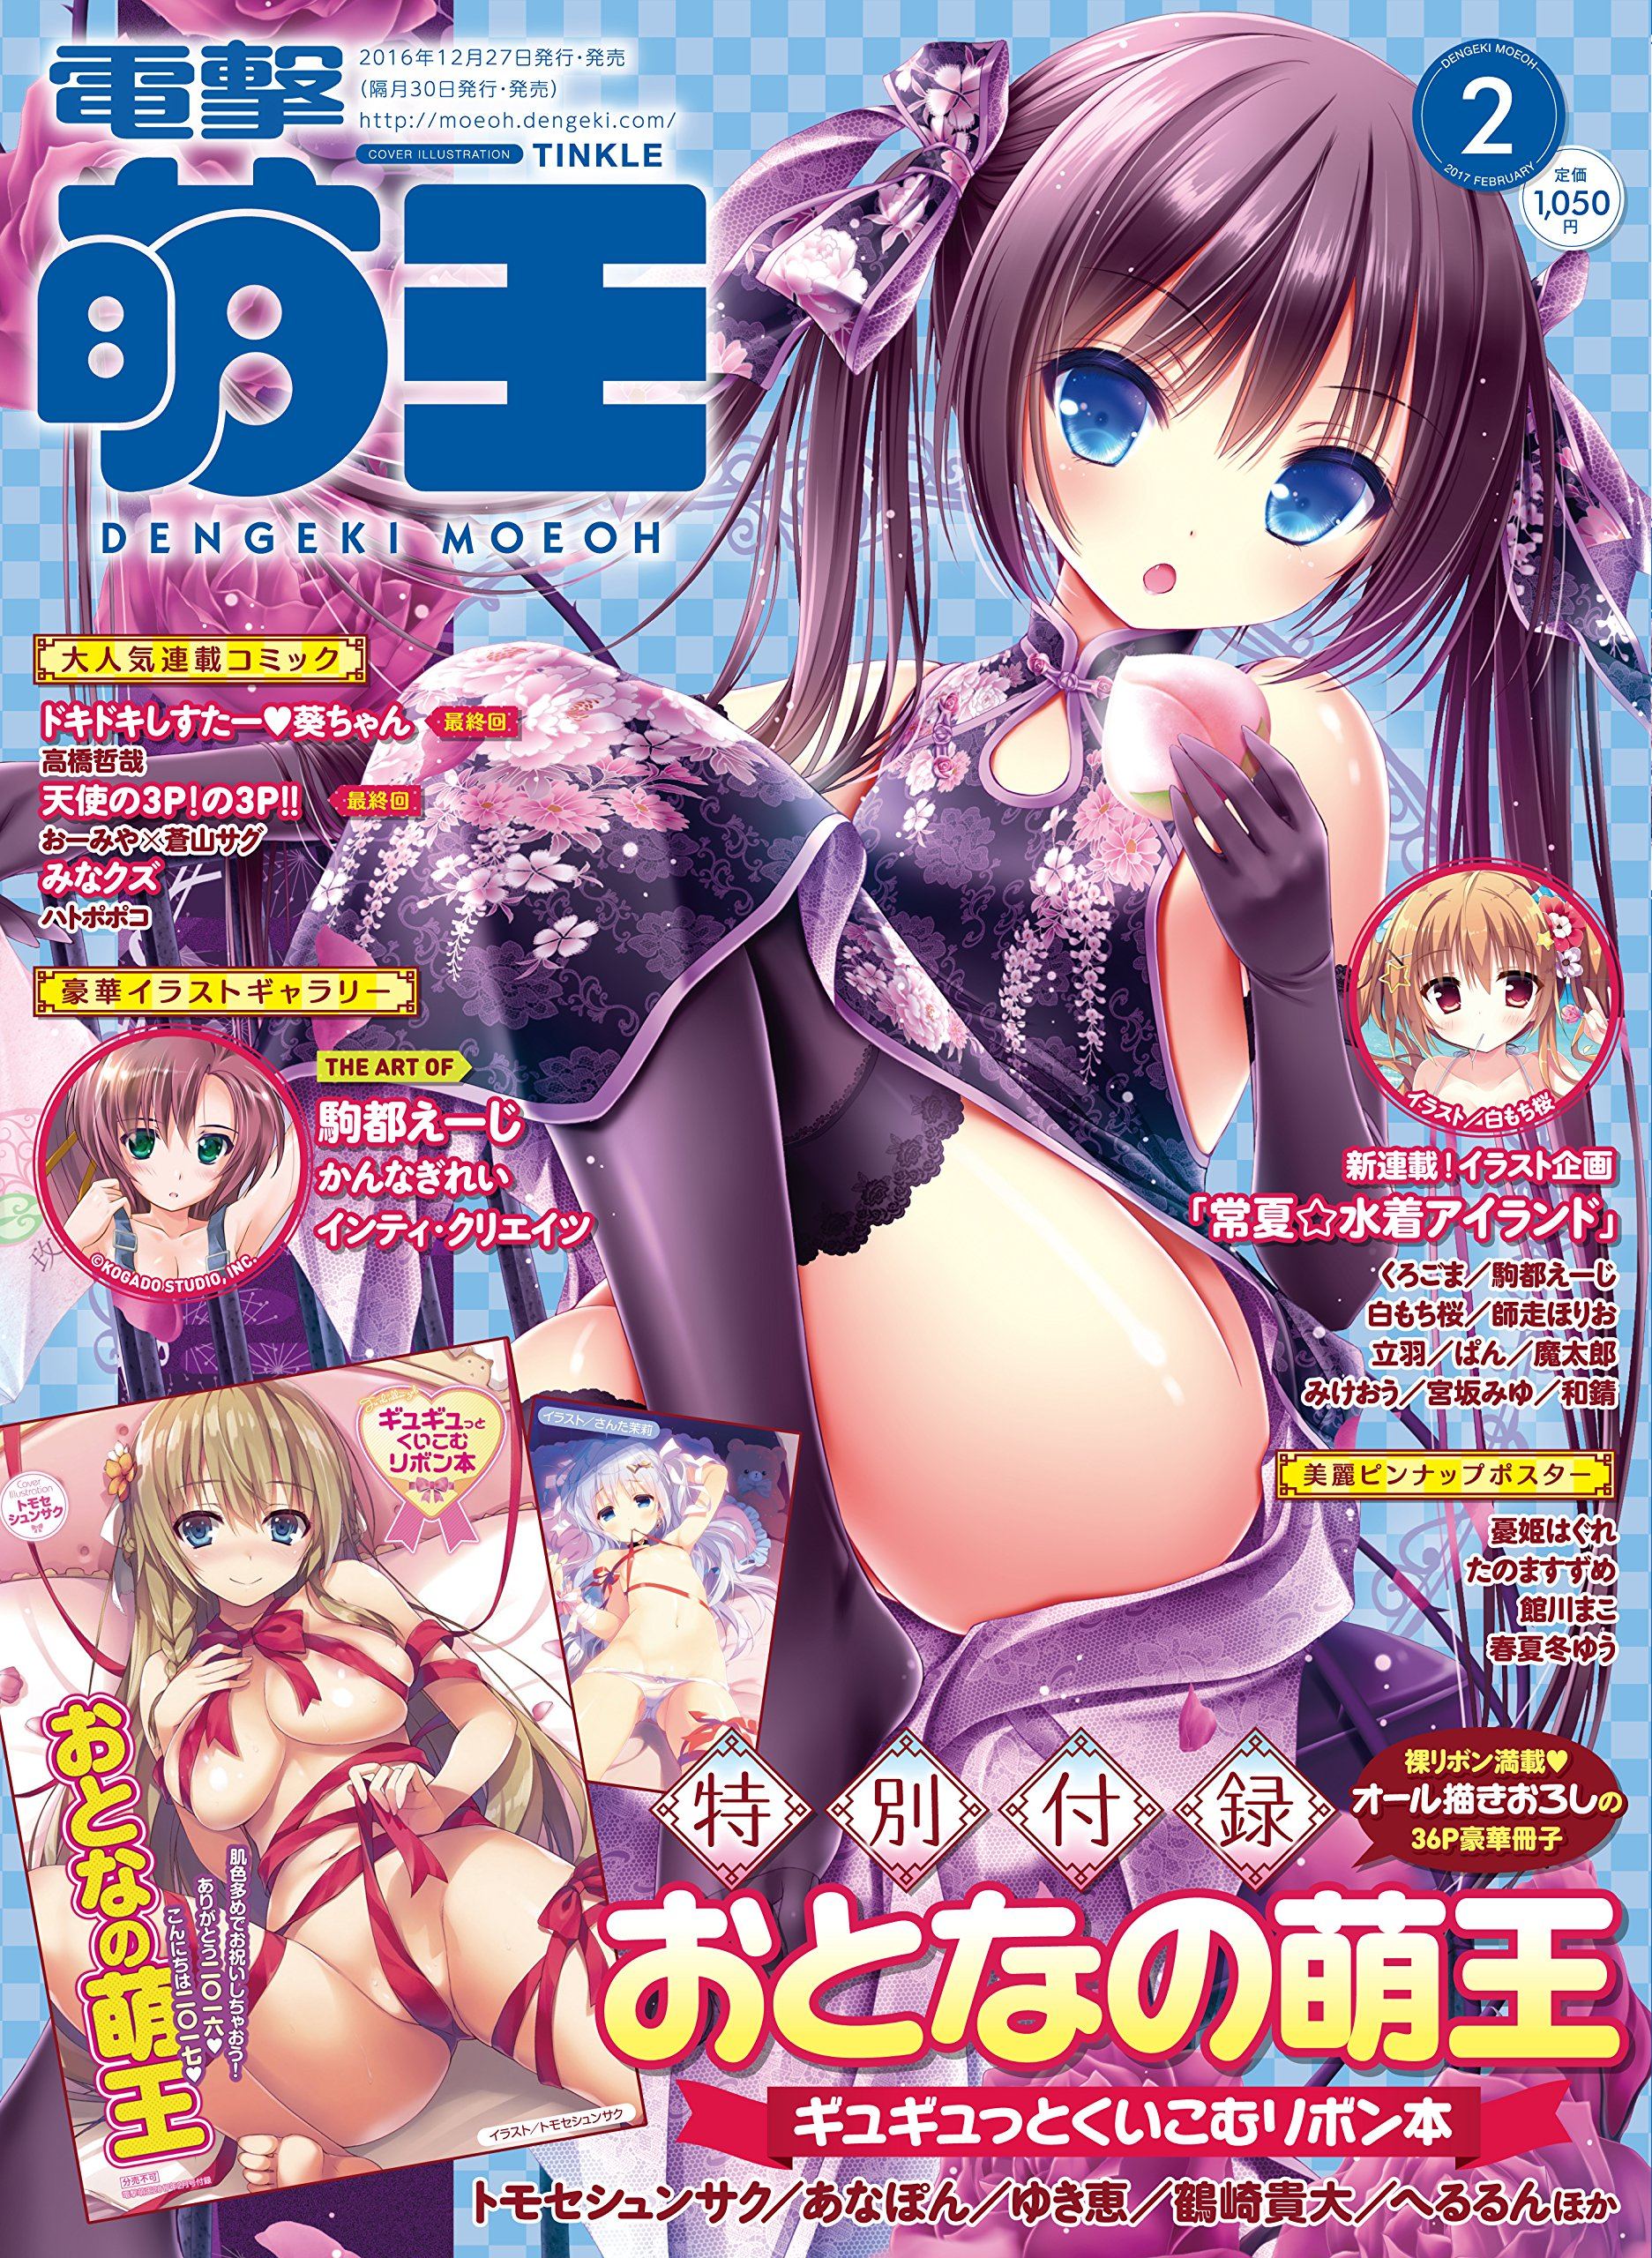 Dengeki Moeoh December 16 Issue